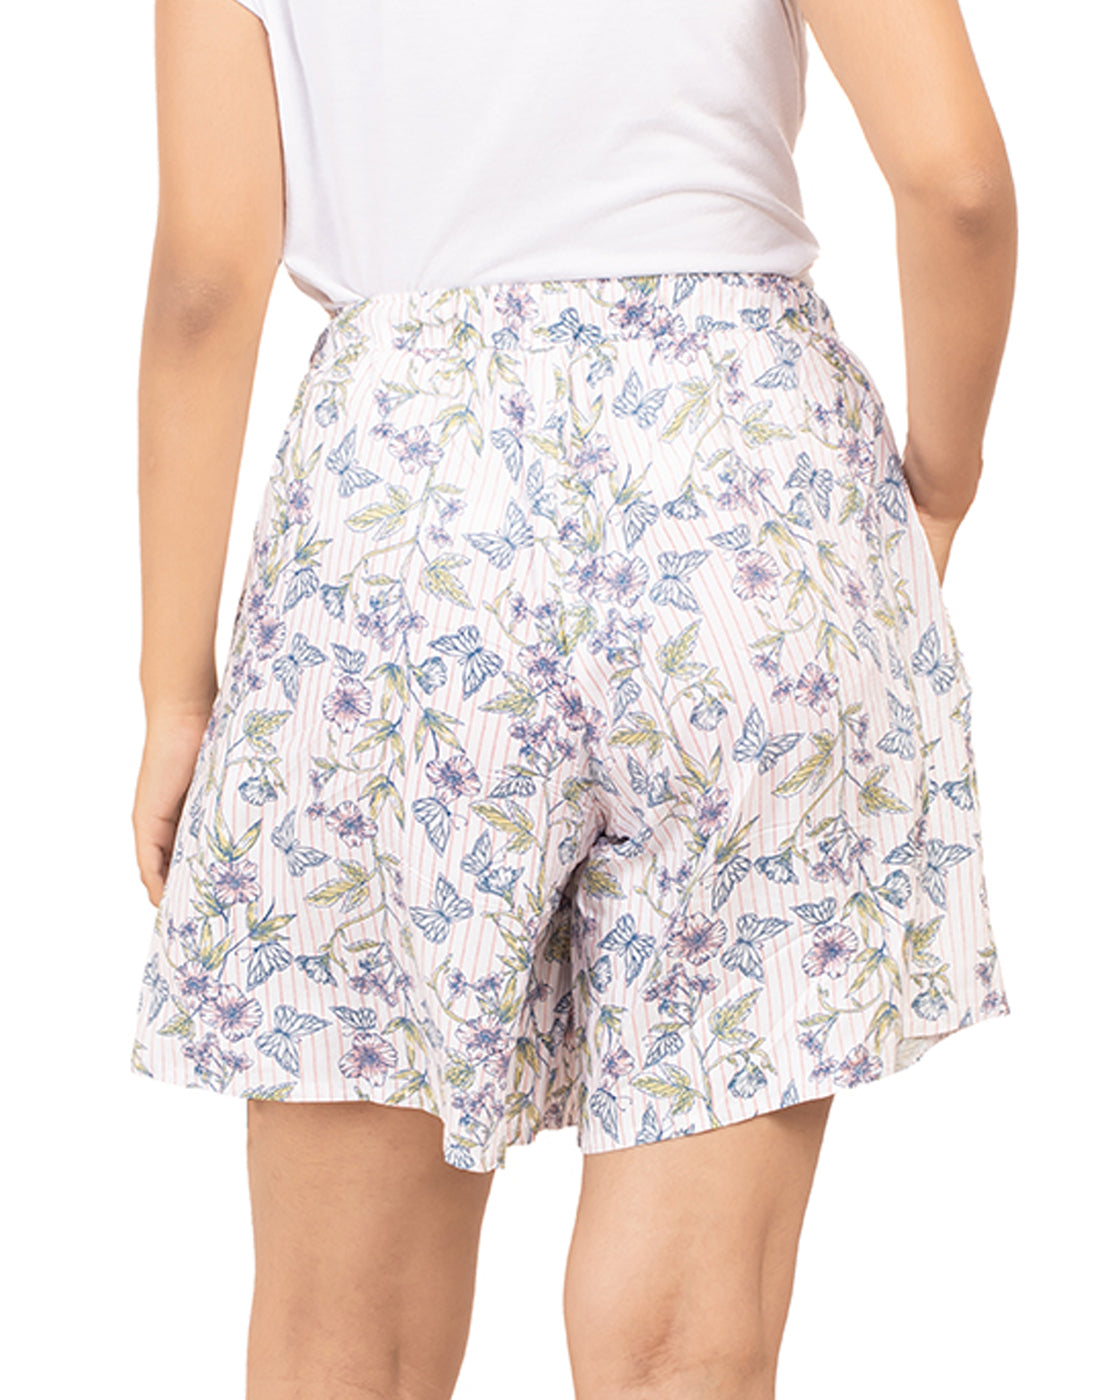 Culottes Shorts for Women-Butterflies